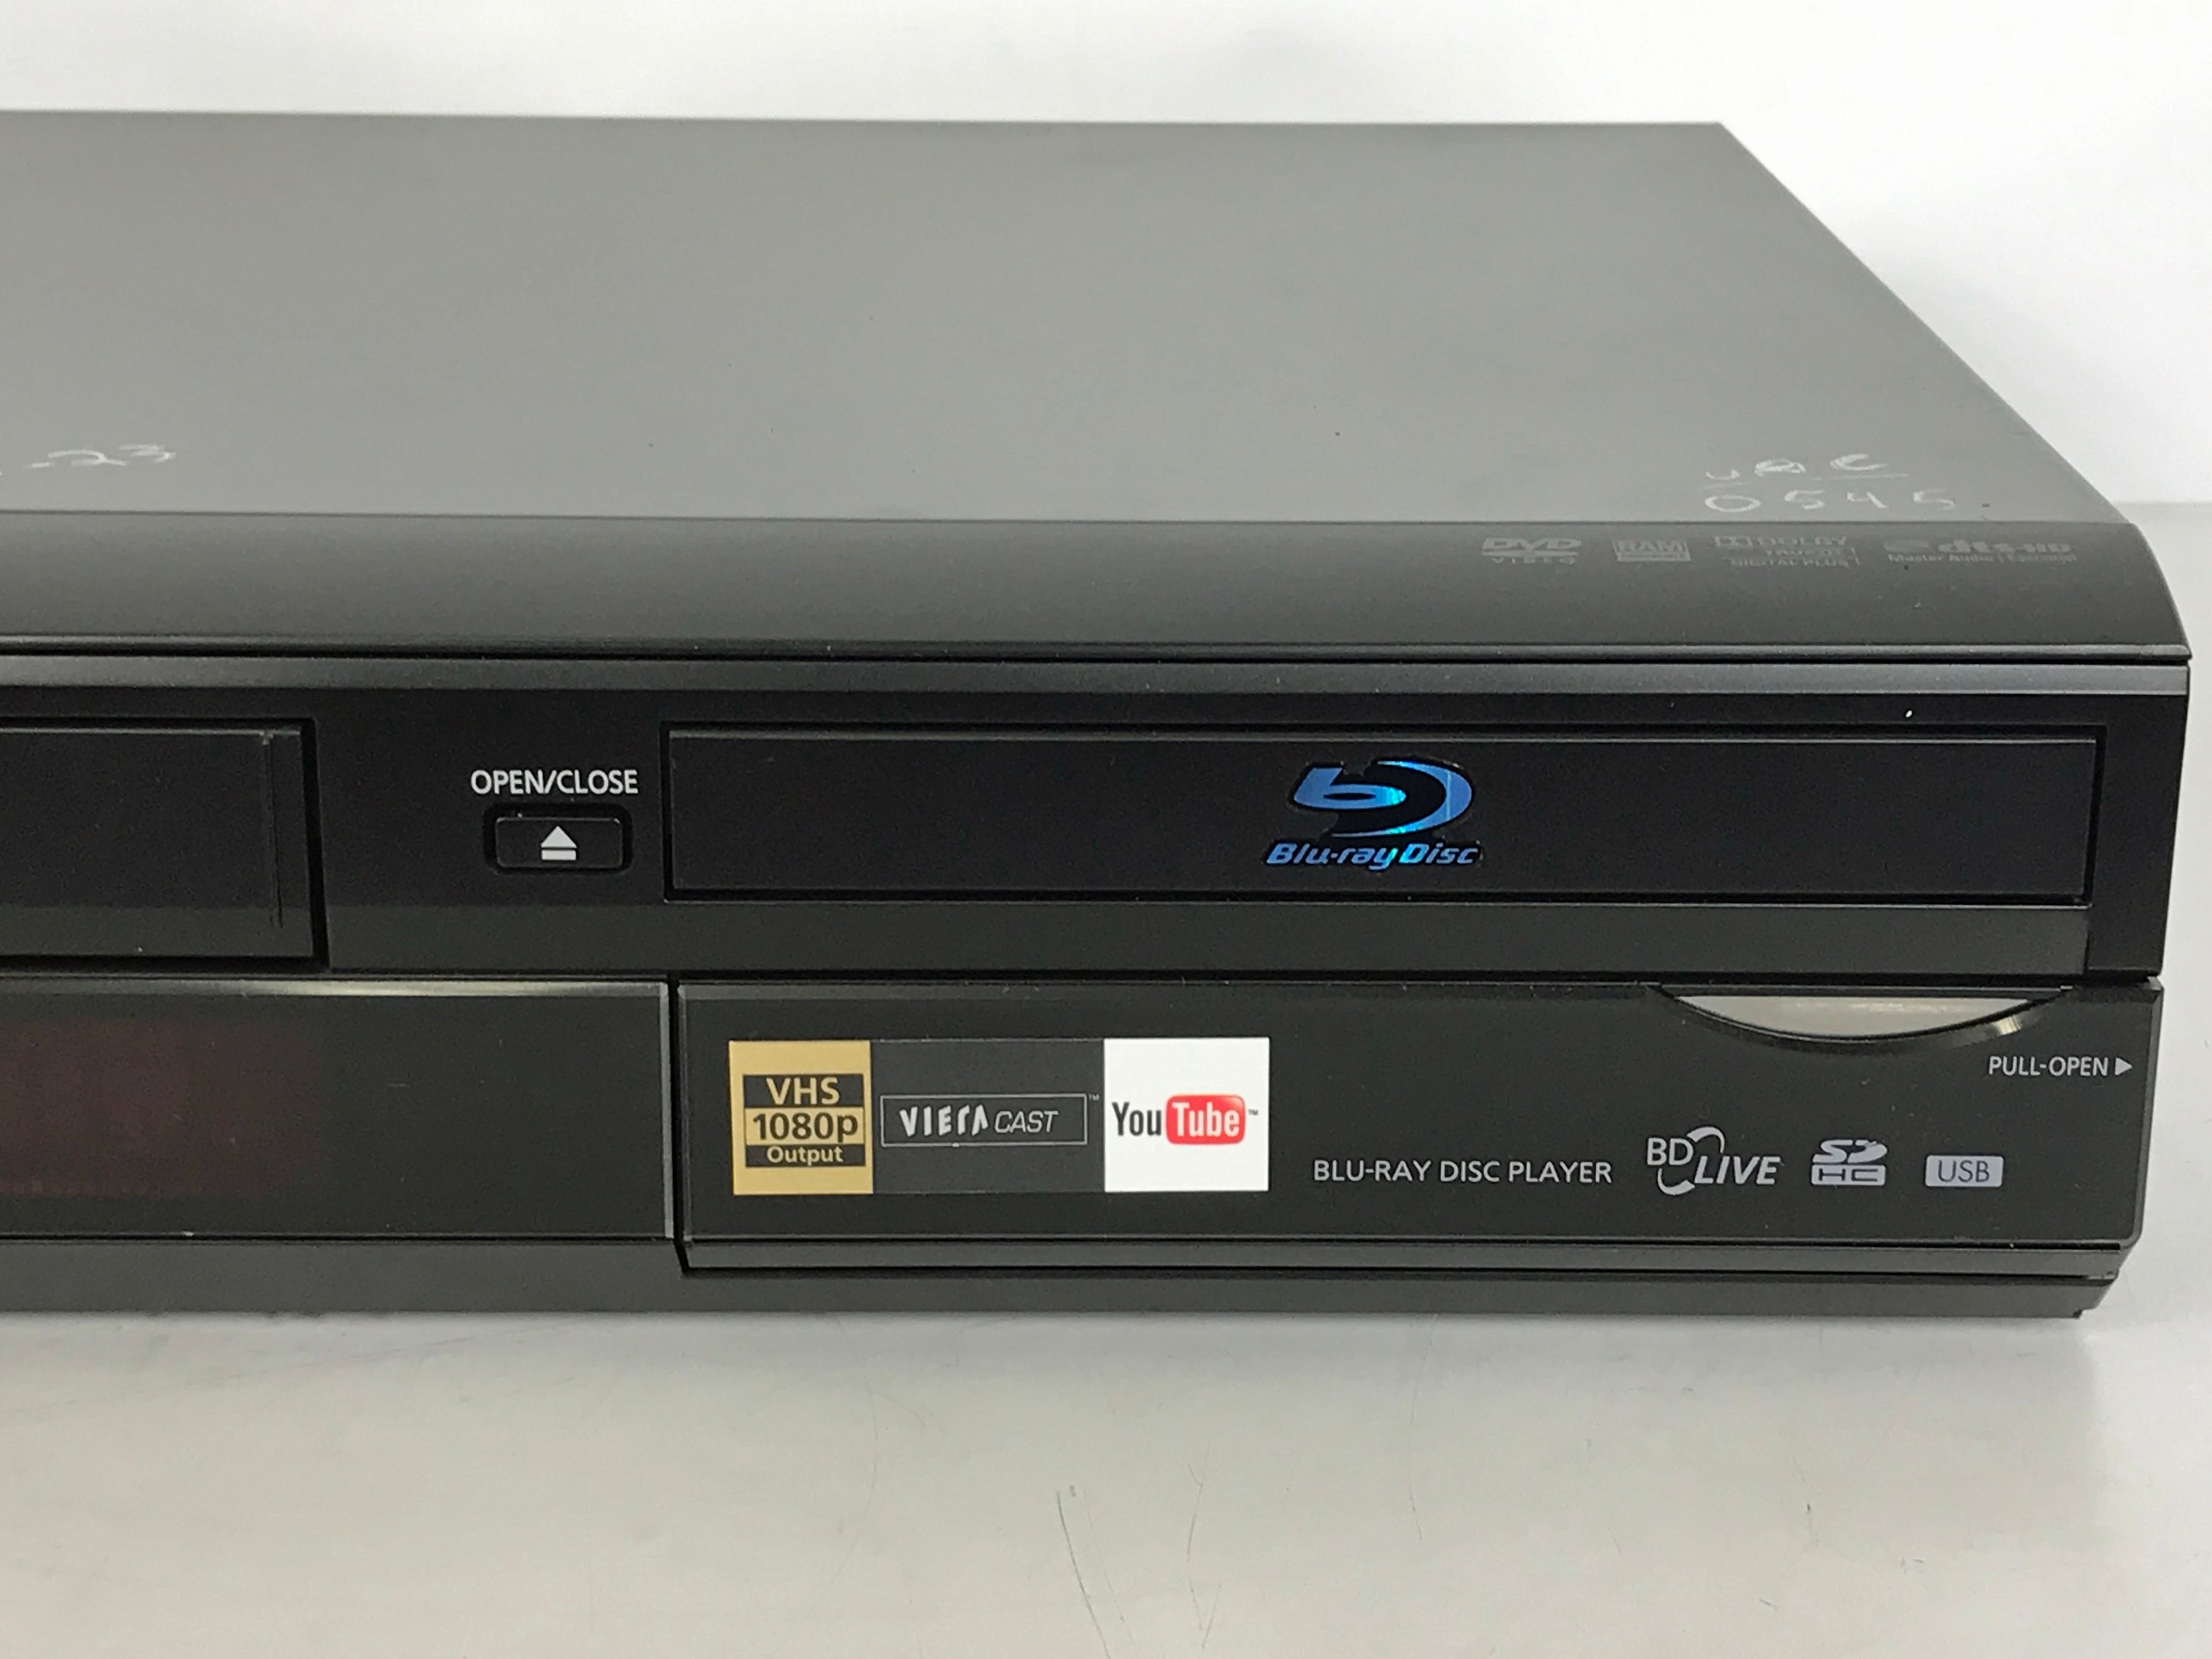 Panasonic DMP-BD70V Blu-ray Disc/VHS Combination Player *VHS H01 Error*